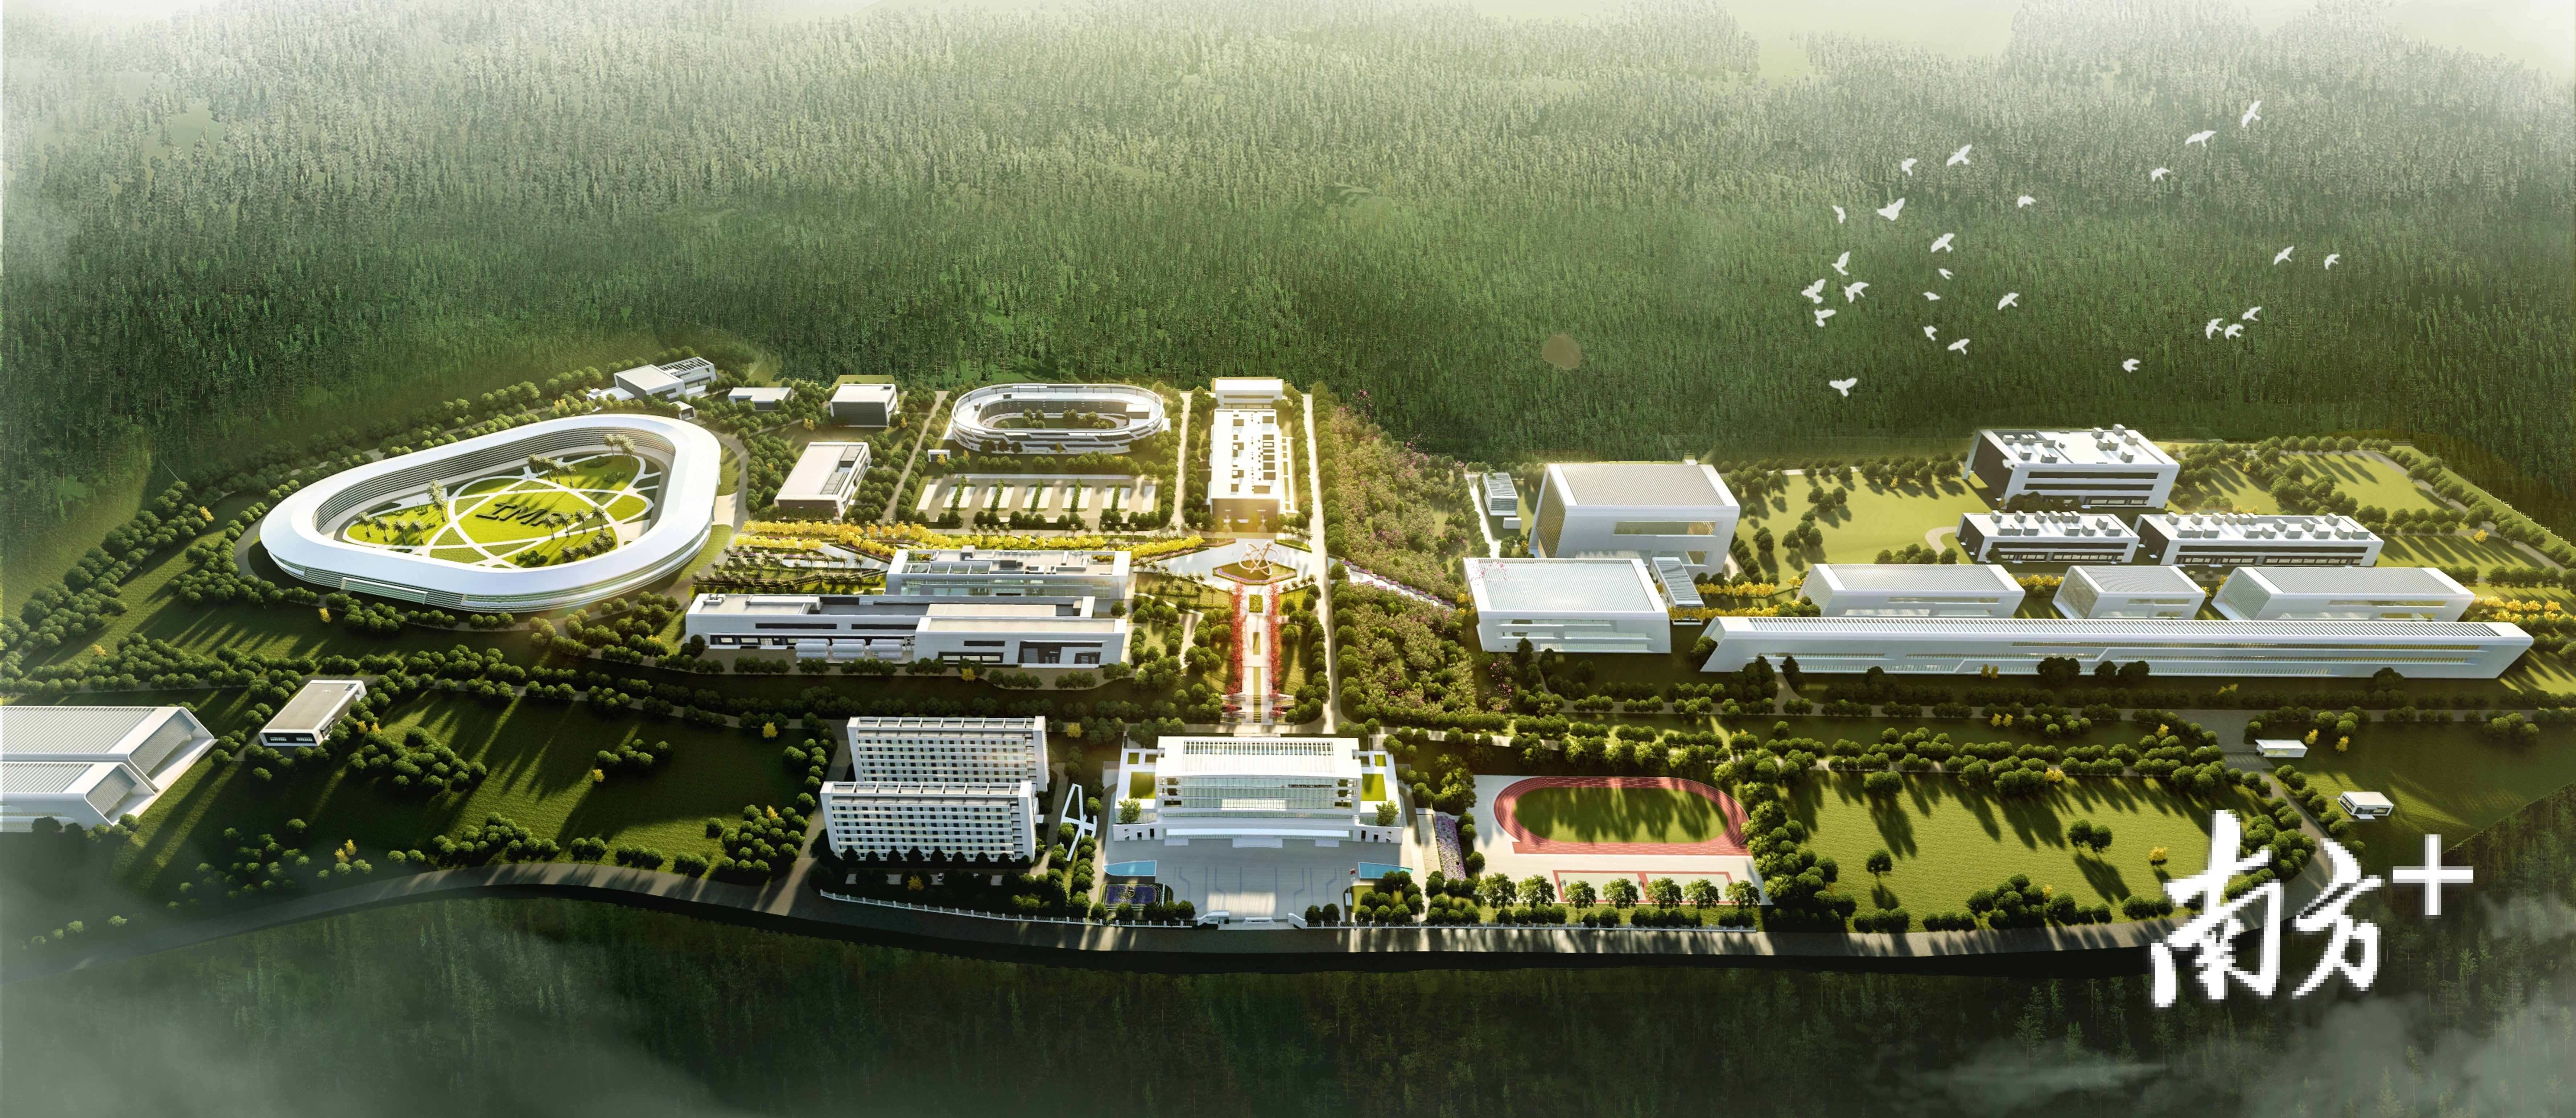  位于惠州惠东的中科院两大科学装置效果图。